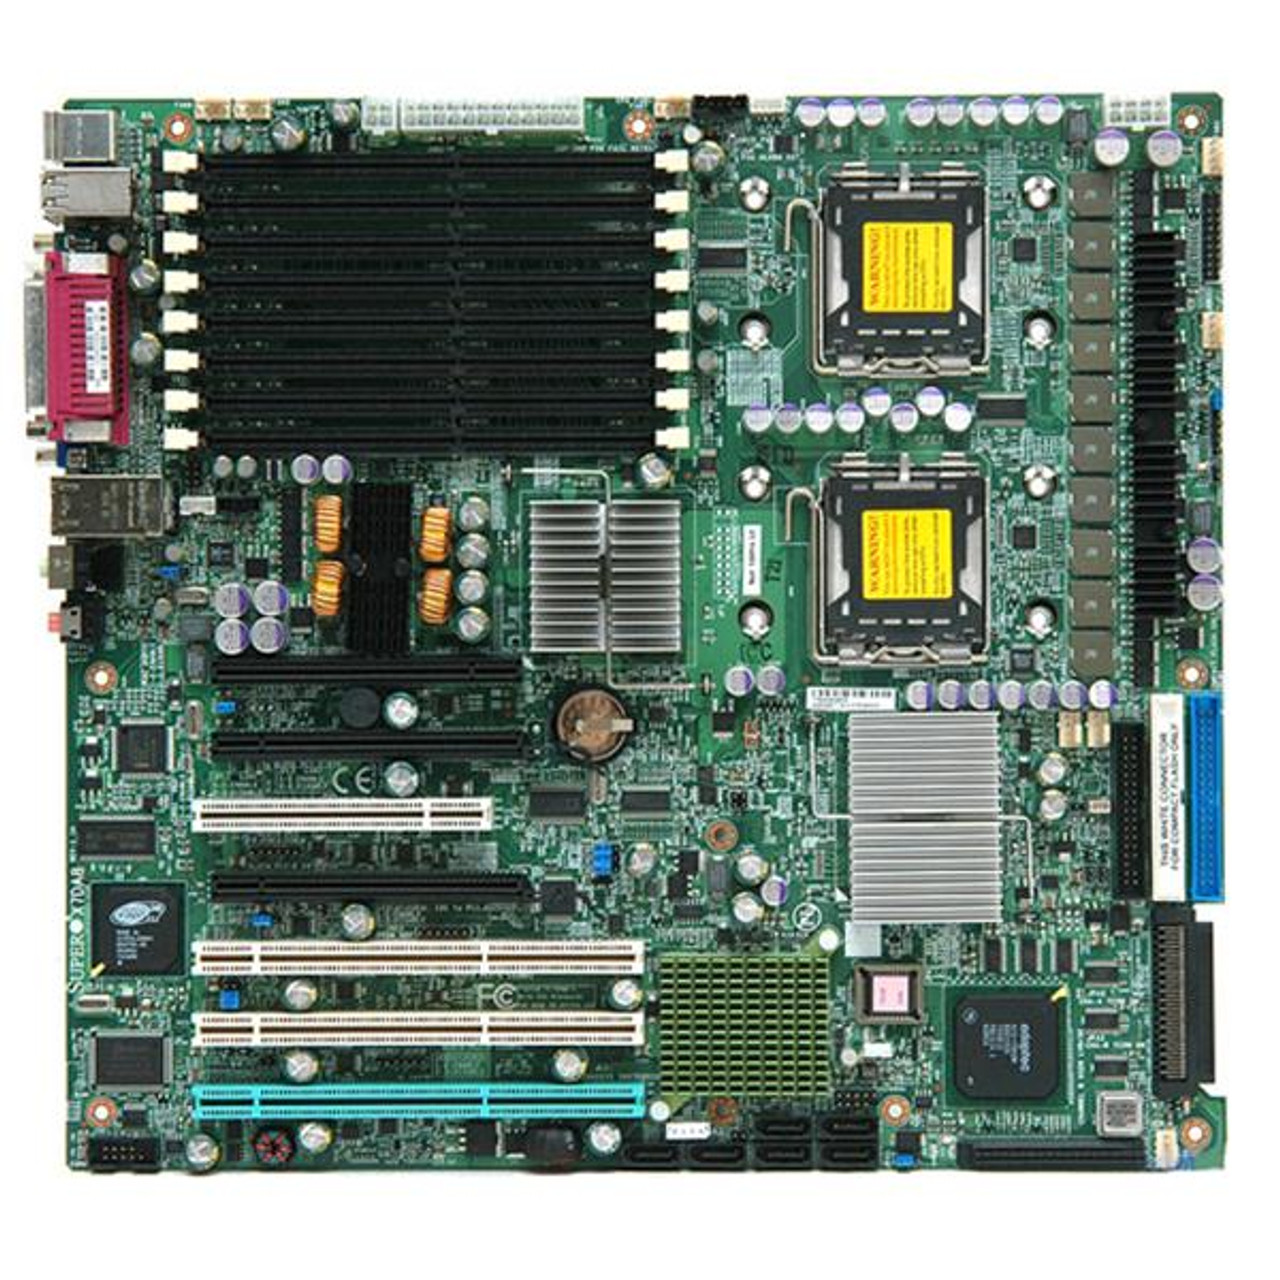 MBD-X7DA8 SuperMicro X7DA8 Dual Socket LGA 771 Intel 5000X Chipset Quad/Dual 64-Bit Intel Xeon Processors Support DDR2 8x DIMM 6x SATA2 Extended ATX S